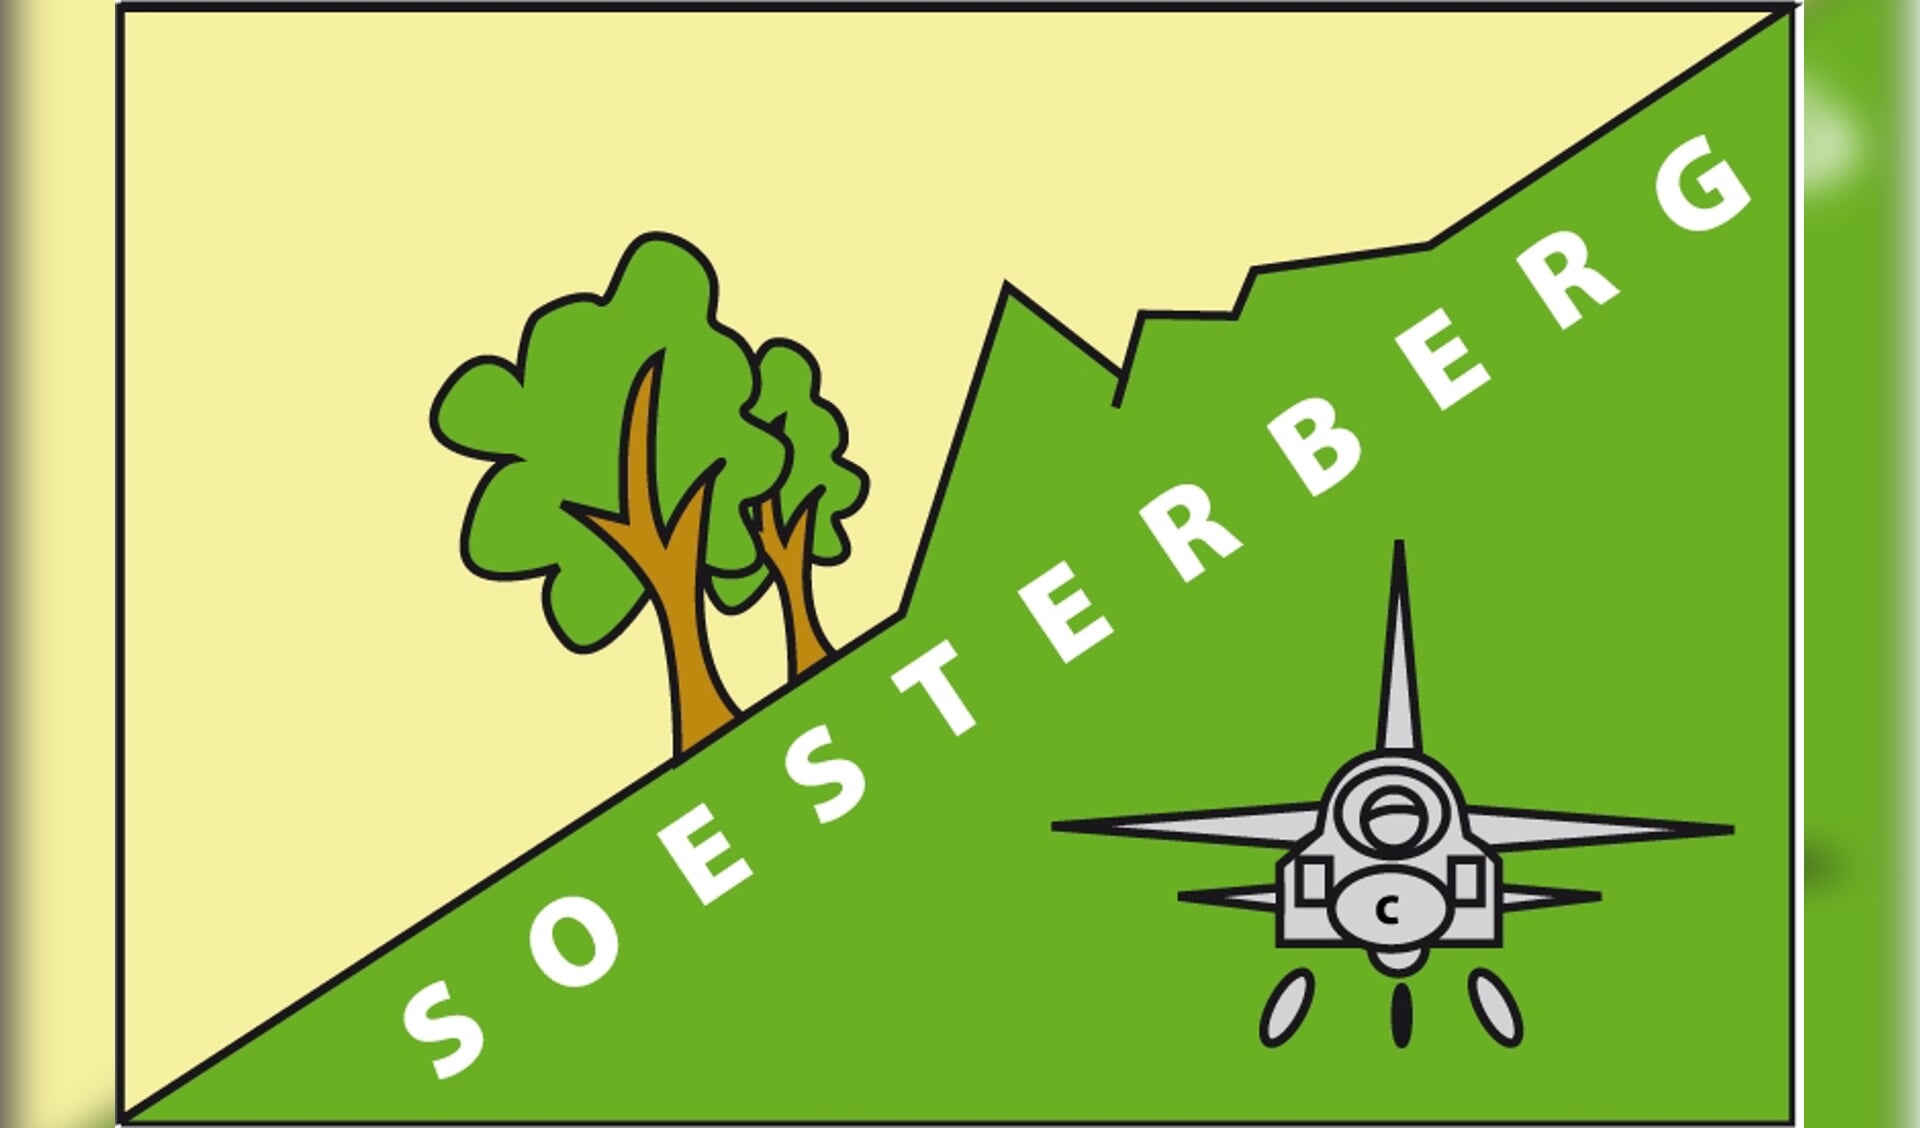 De dorpsvlag van Soesterberg kan niet uit voor er duidelijkheid is over subsidie van de gemeente.